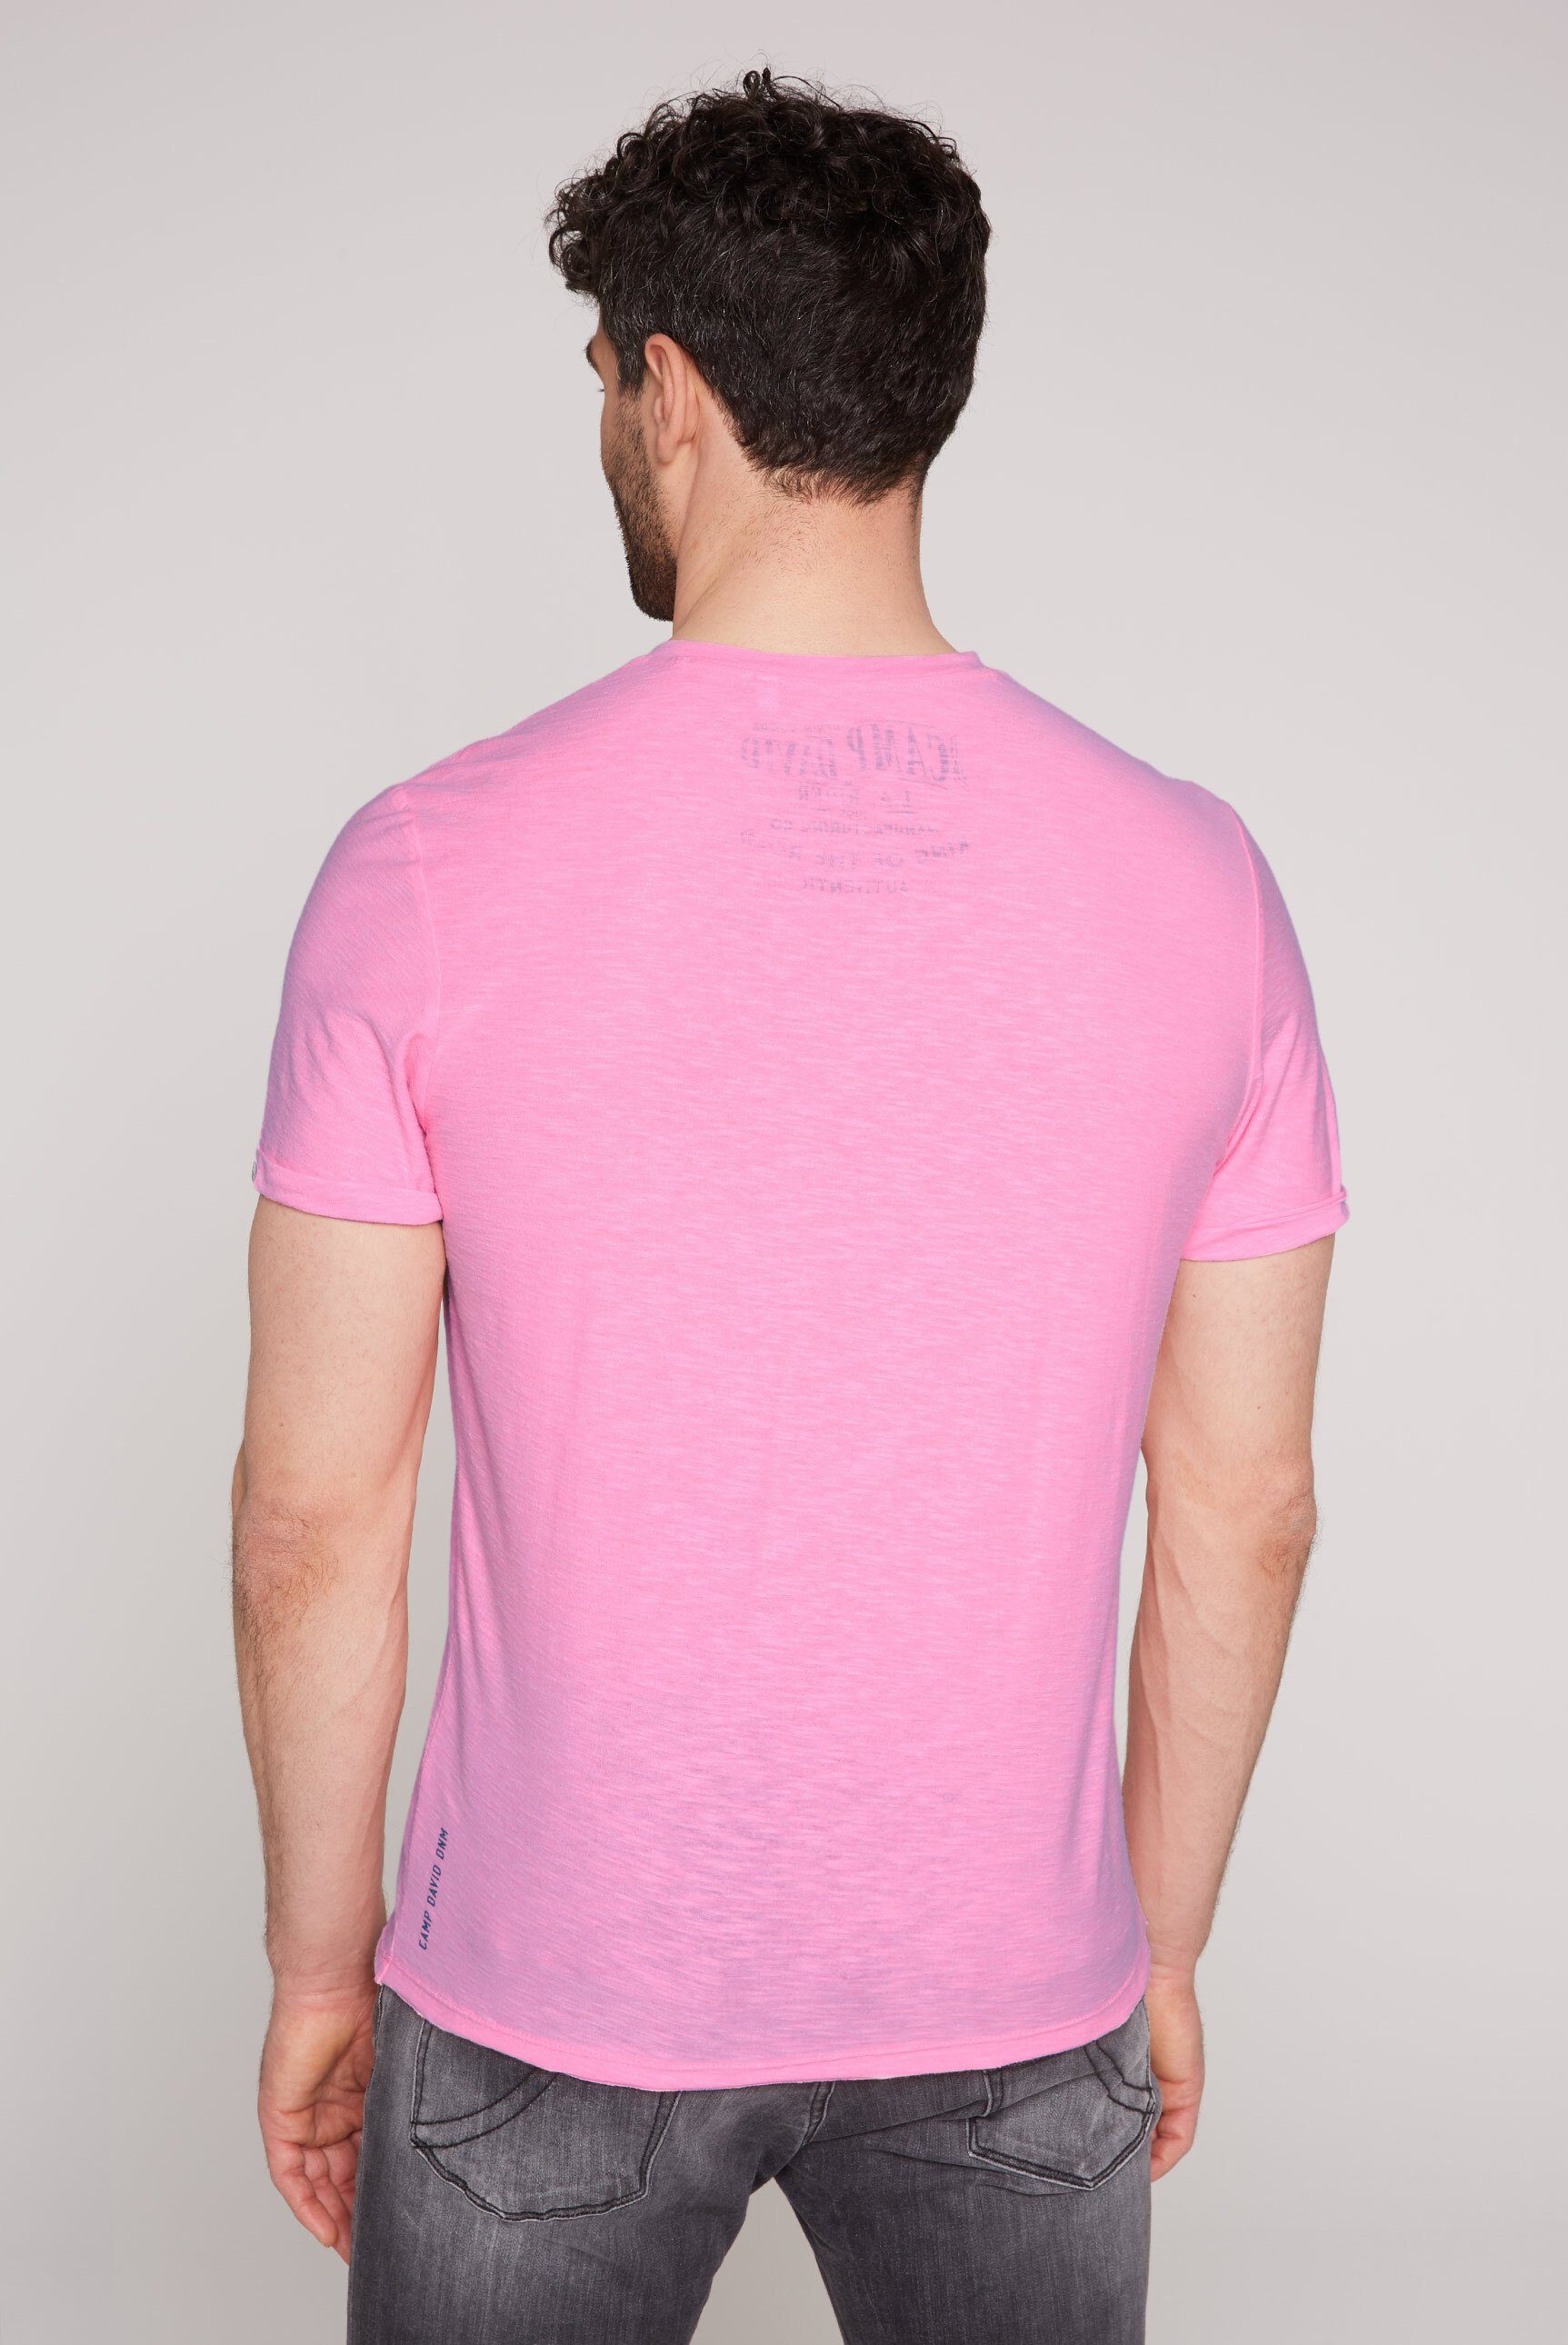 CAMP mit pink fixierten neon V-Shirt Krempelärmeln DAVID